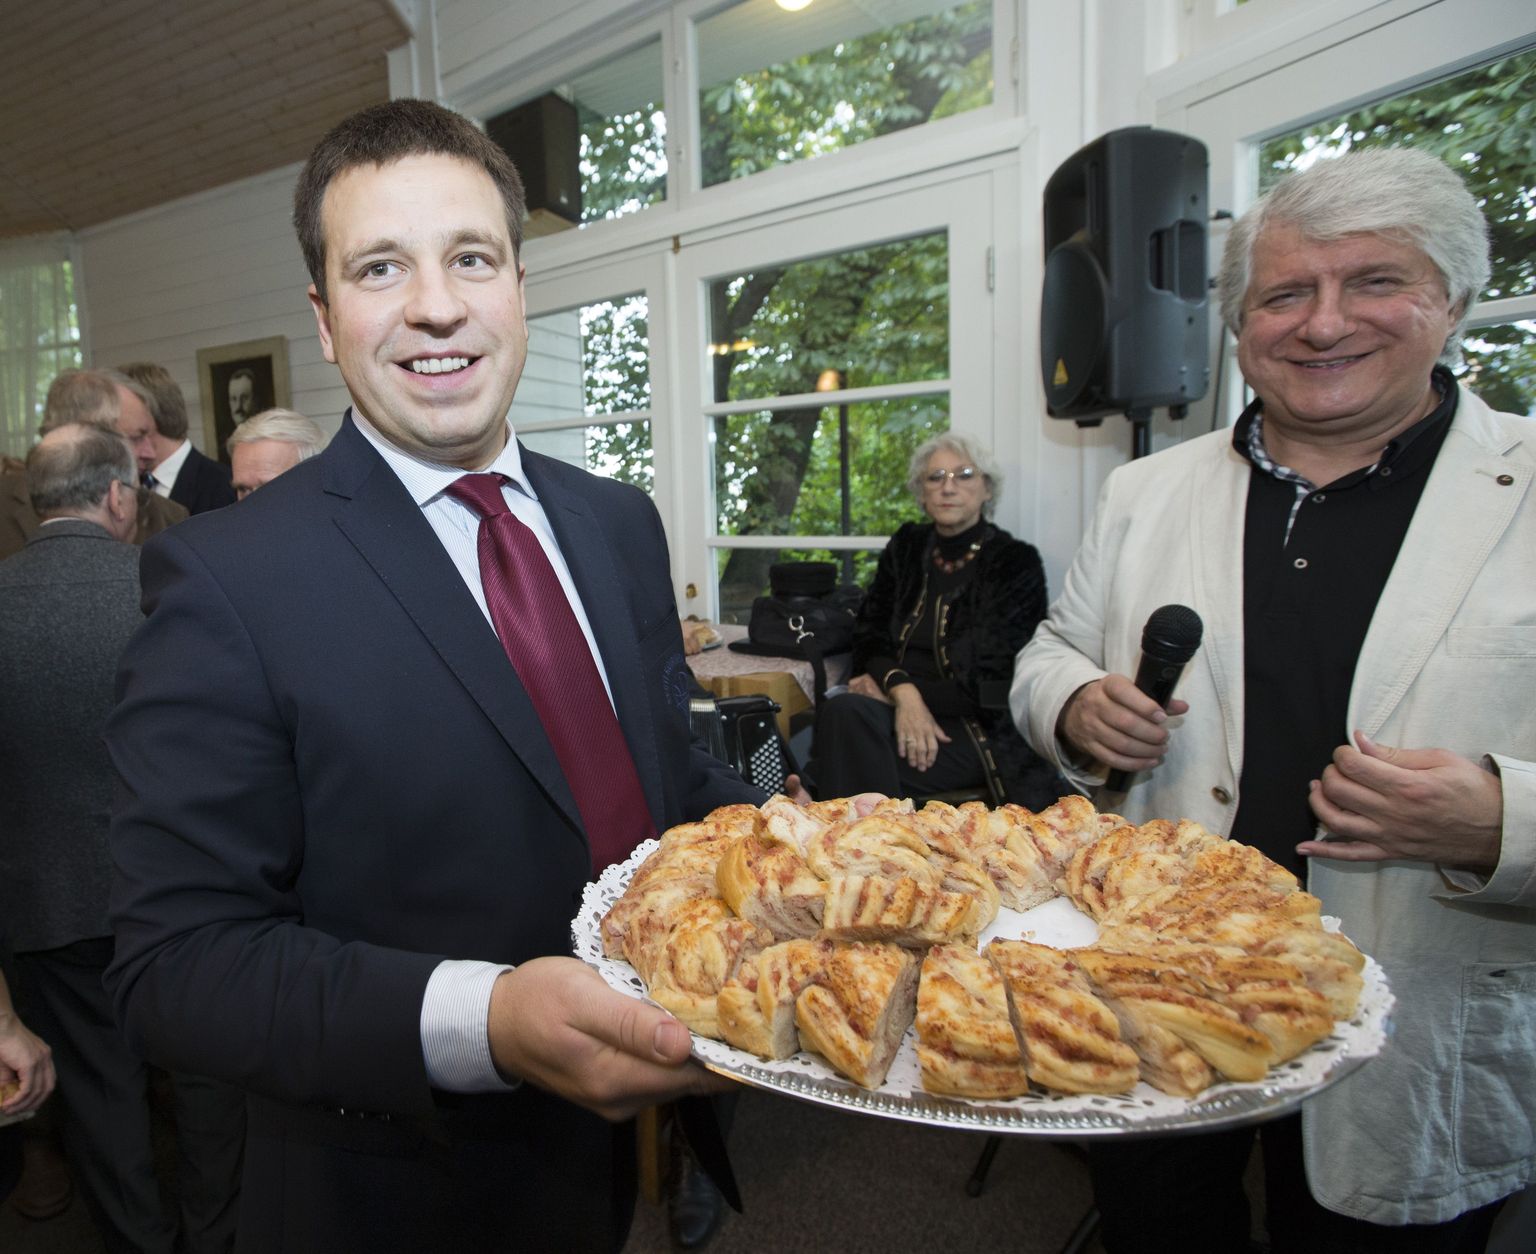 Keskerakonna sünnipäev Harju mäel Edgari kohvikus. Pildil Jüri Ratas jagab peo külalistele kringlit, kõrval näitleja Eduard Toman.